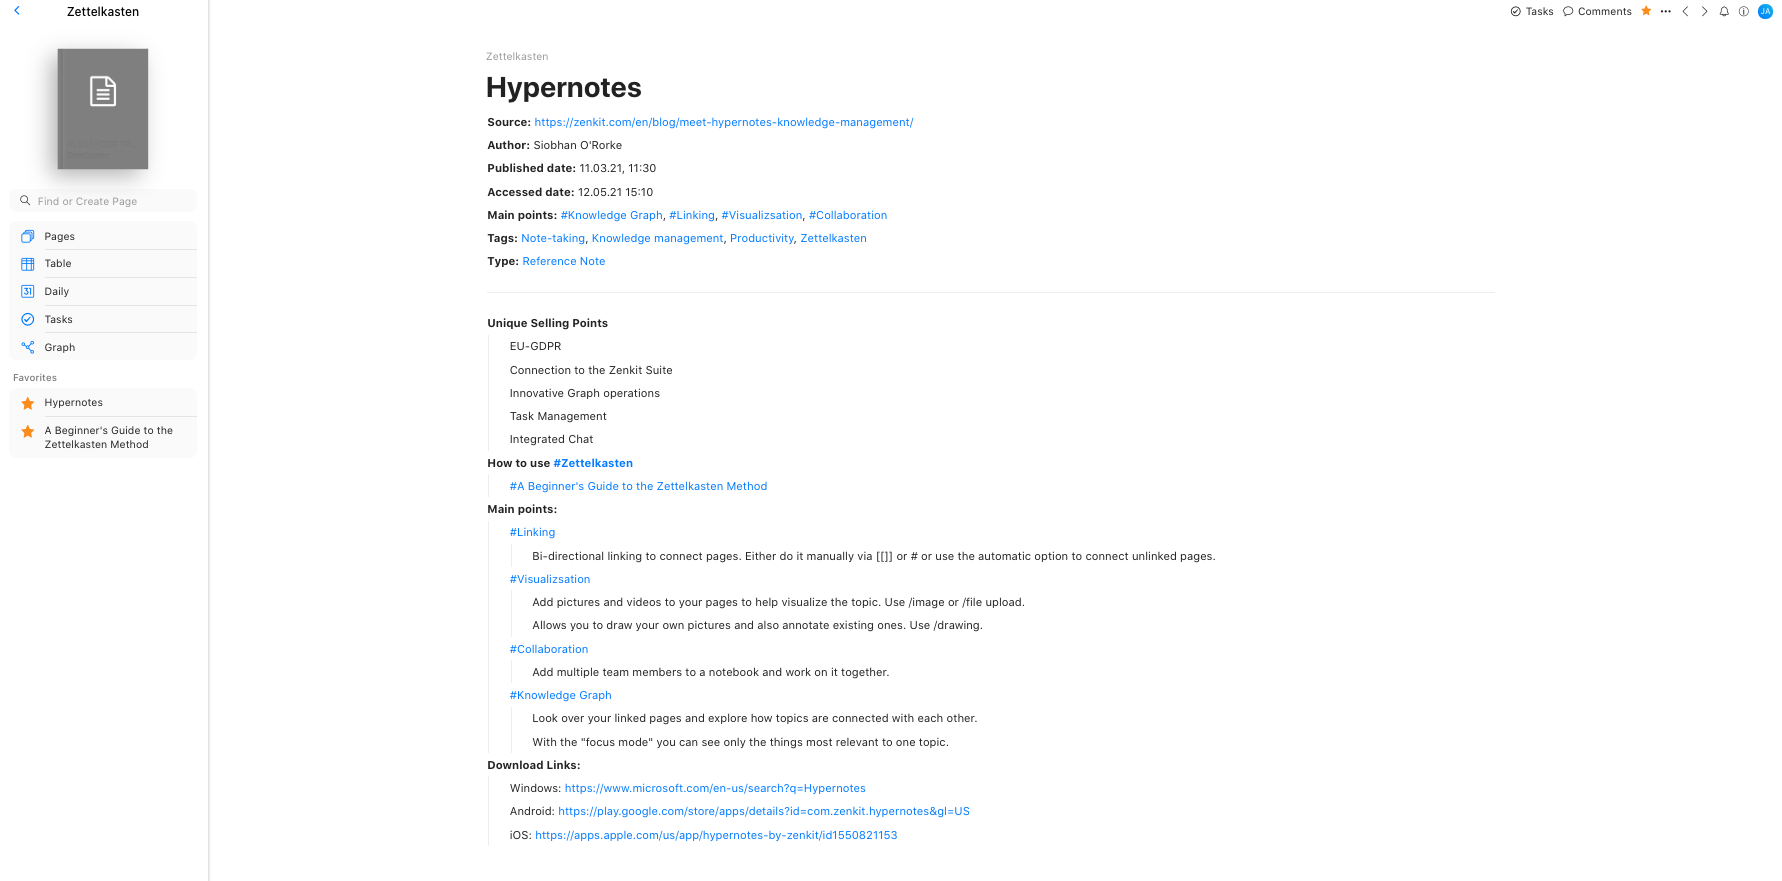 Hypernotes Zettelkasten reference